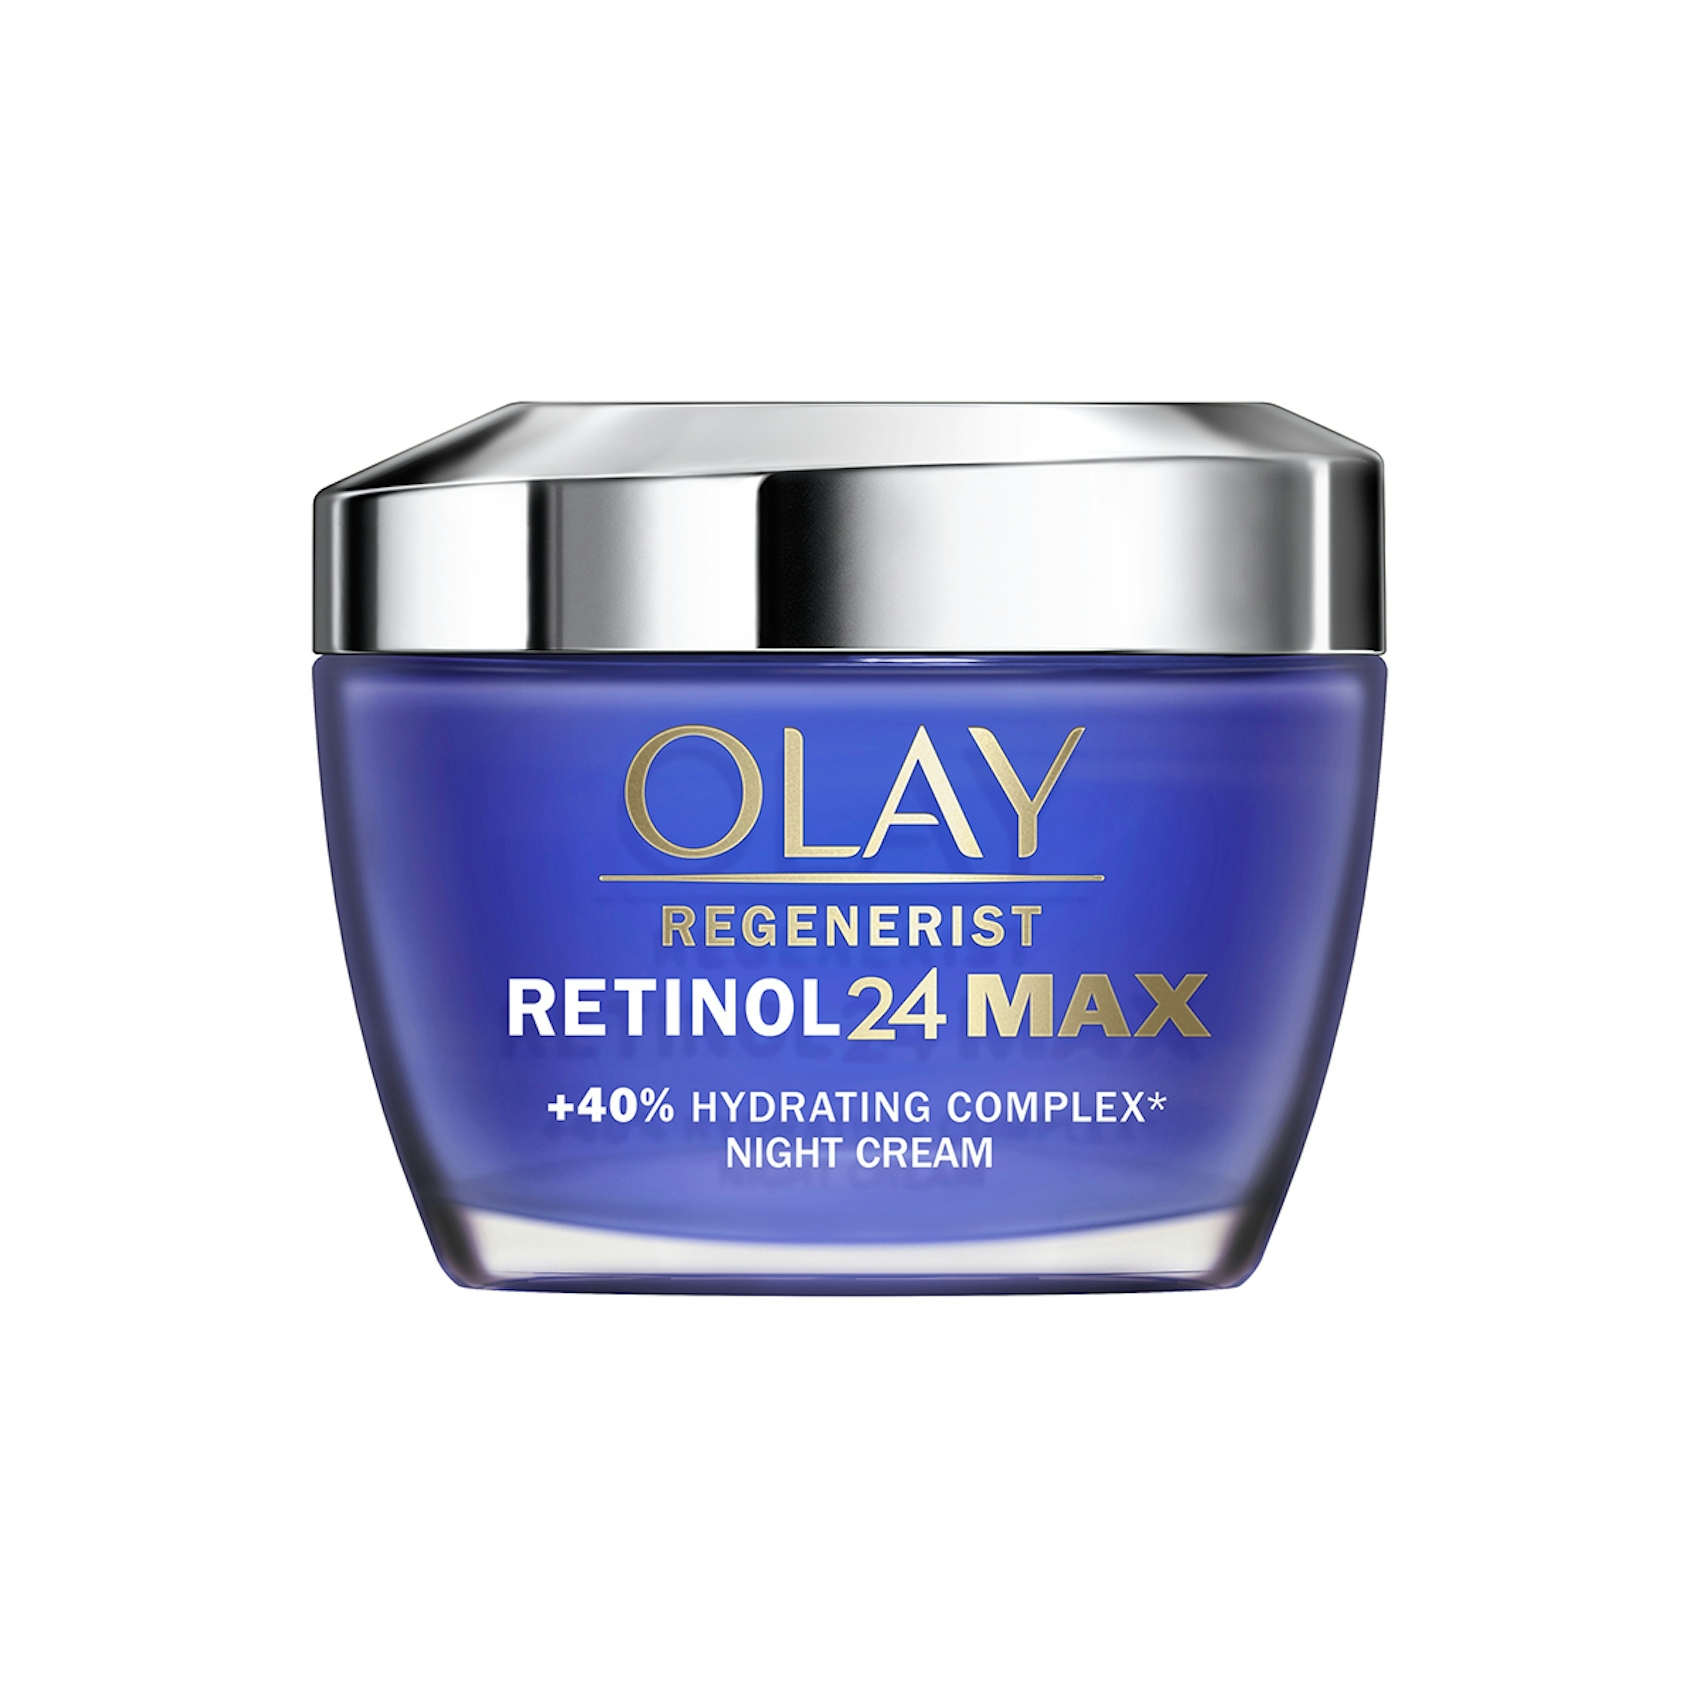 Crema facial cuidado noche regenerist retinol 24 max OLAY 50 ml